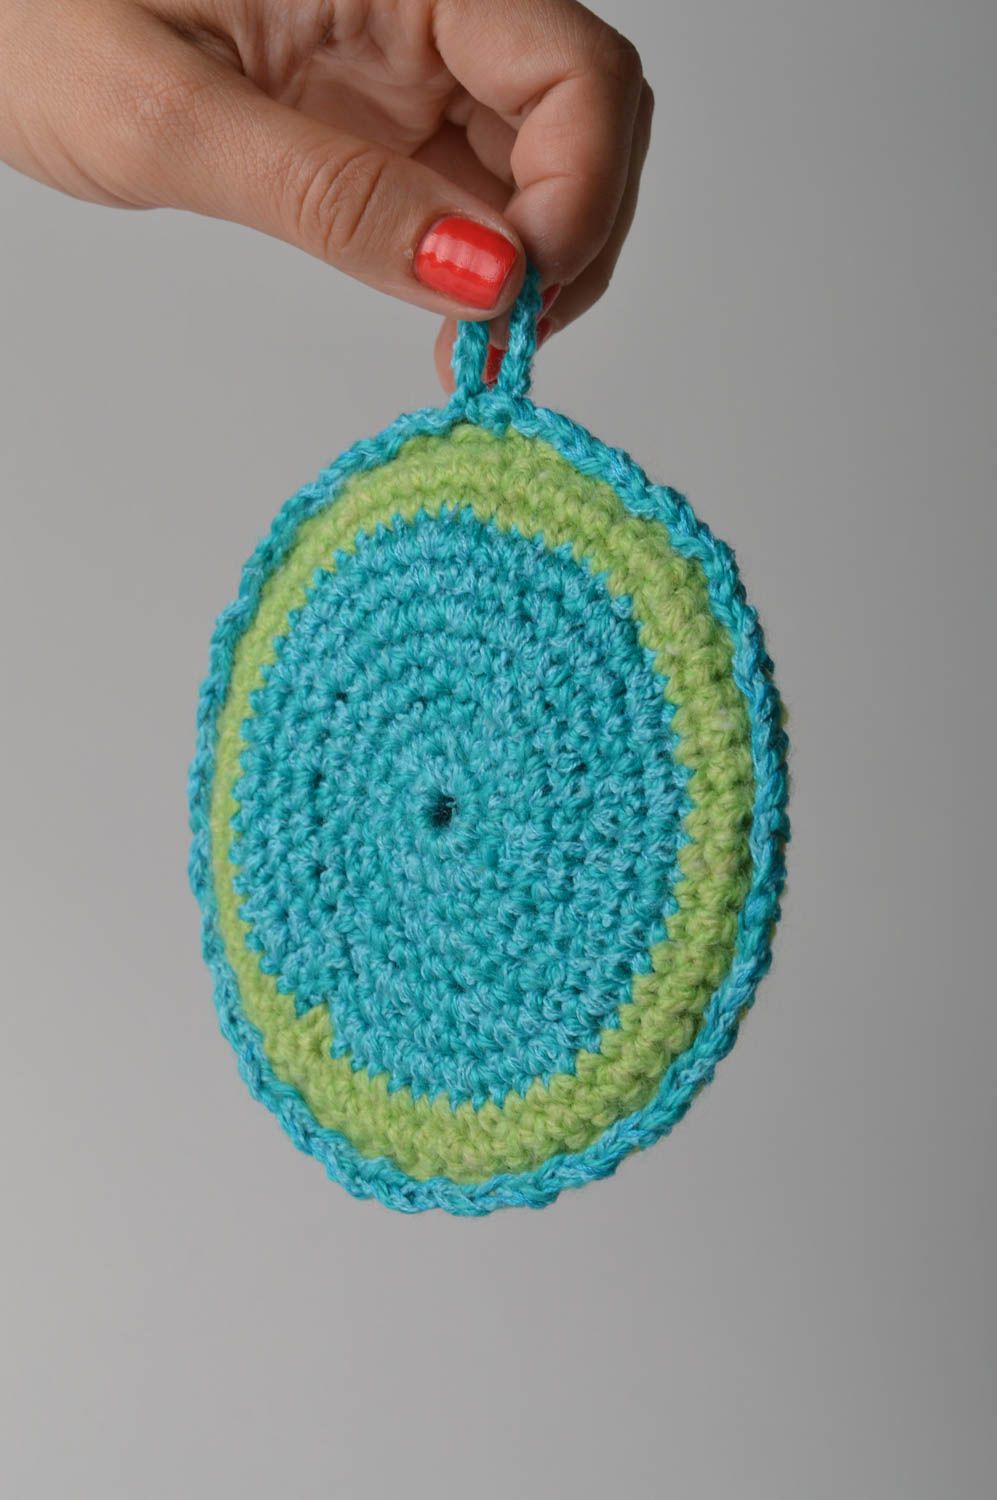 Beautiful handmade crochet potholder pot holder kitchen supplies crochet ideas photo 2